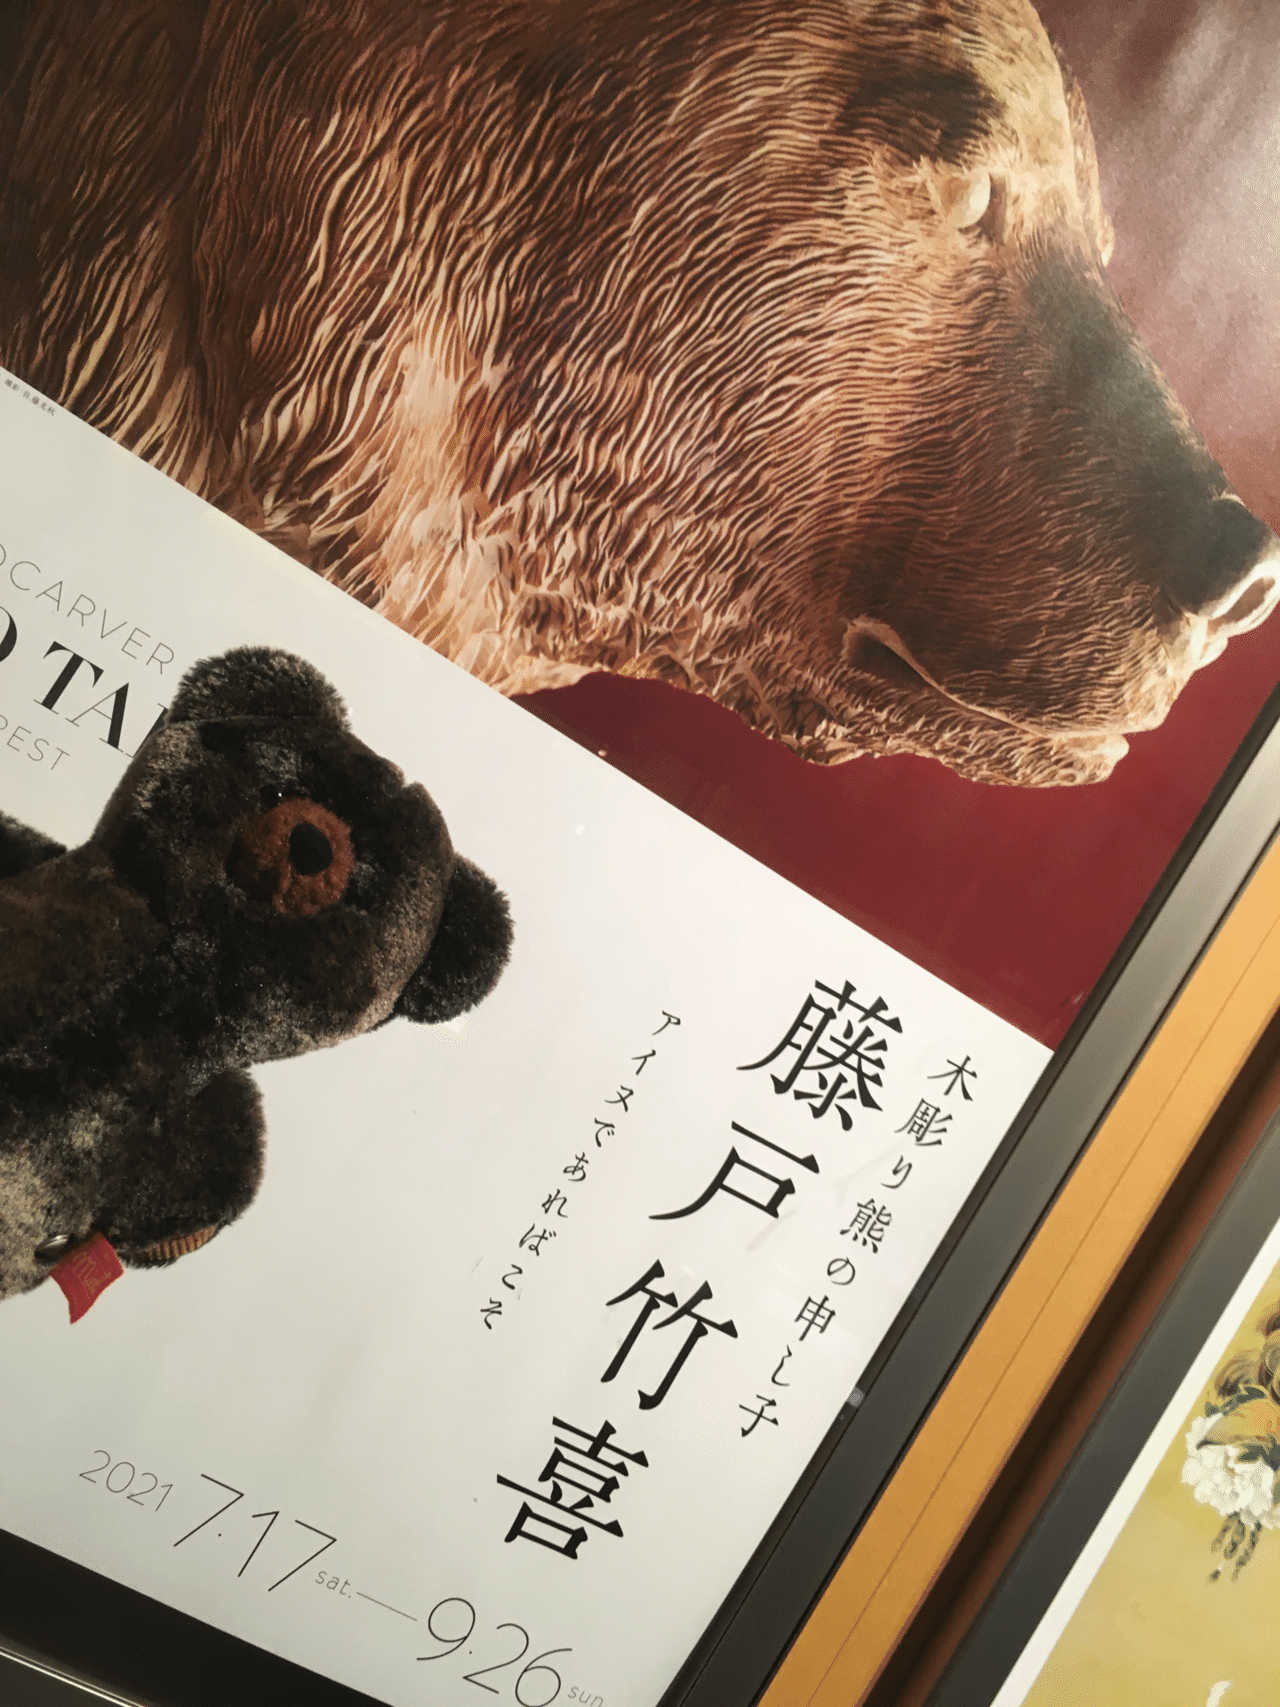 木彫り熊の申し子 藤戸竹喜アイヌであればこそ(於:東京ステーション 